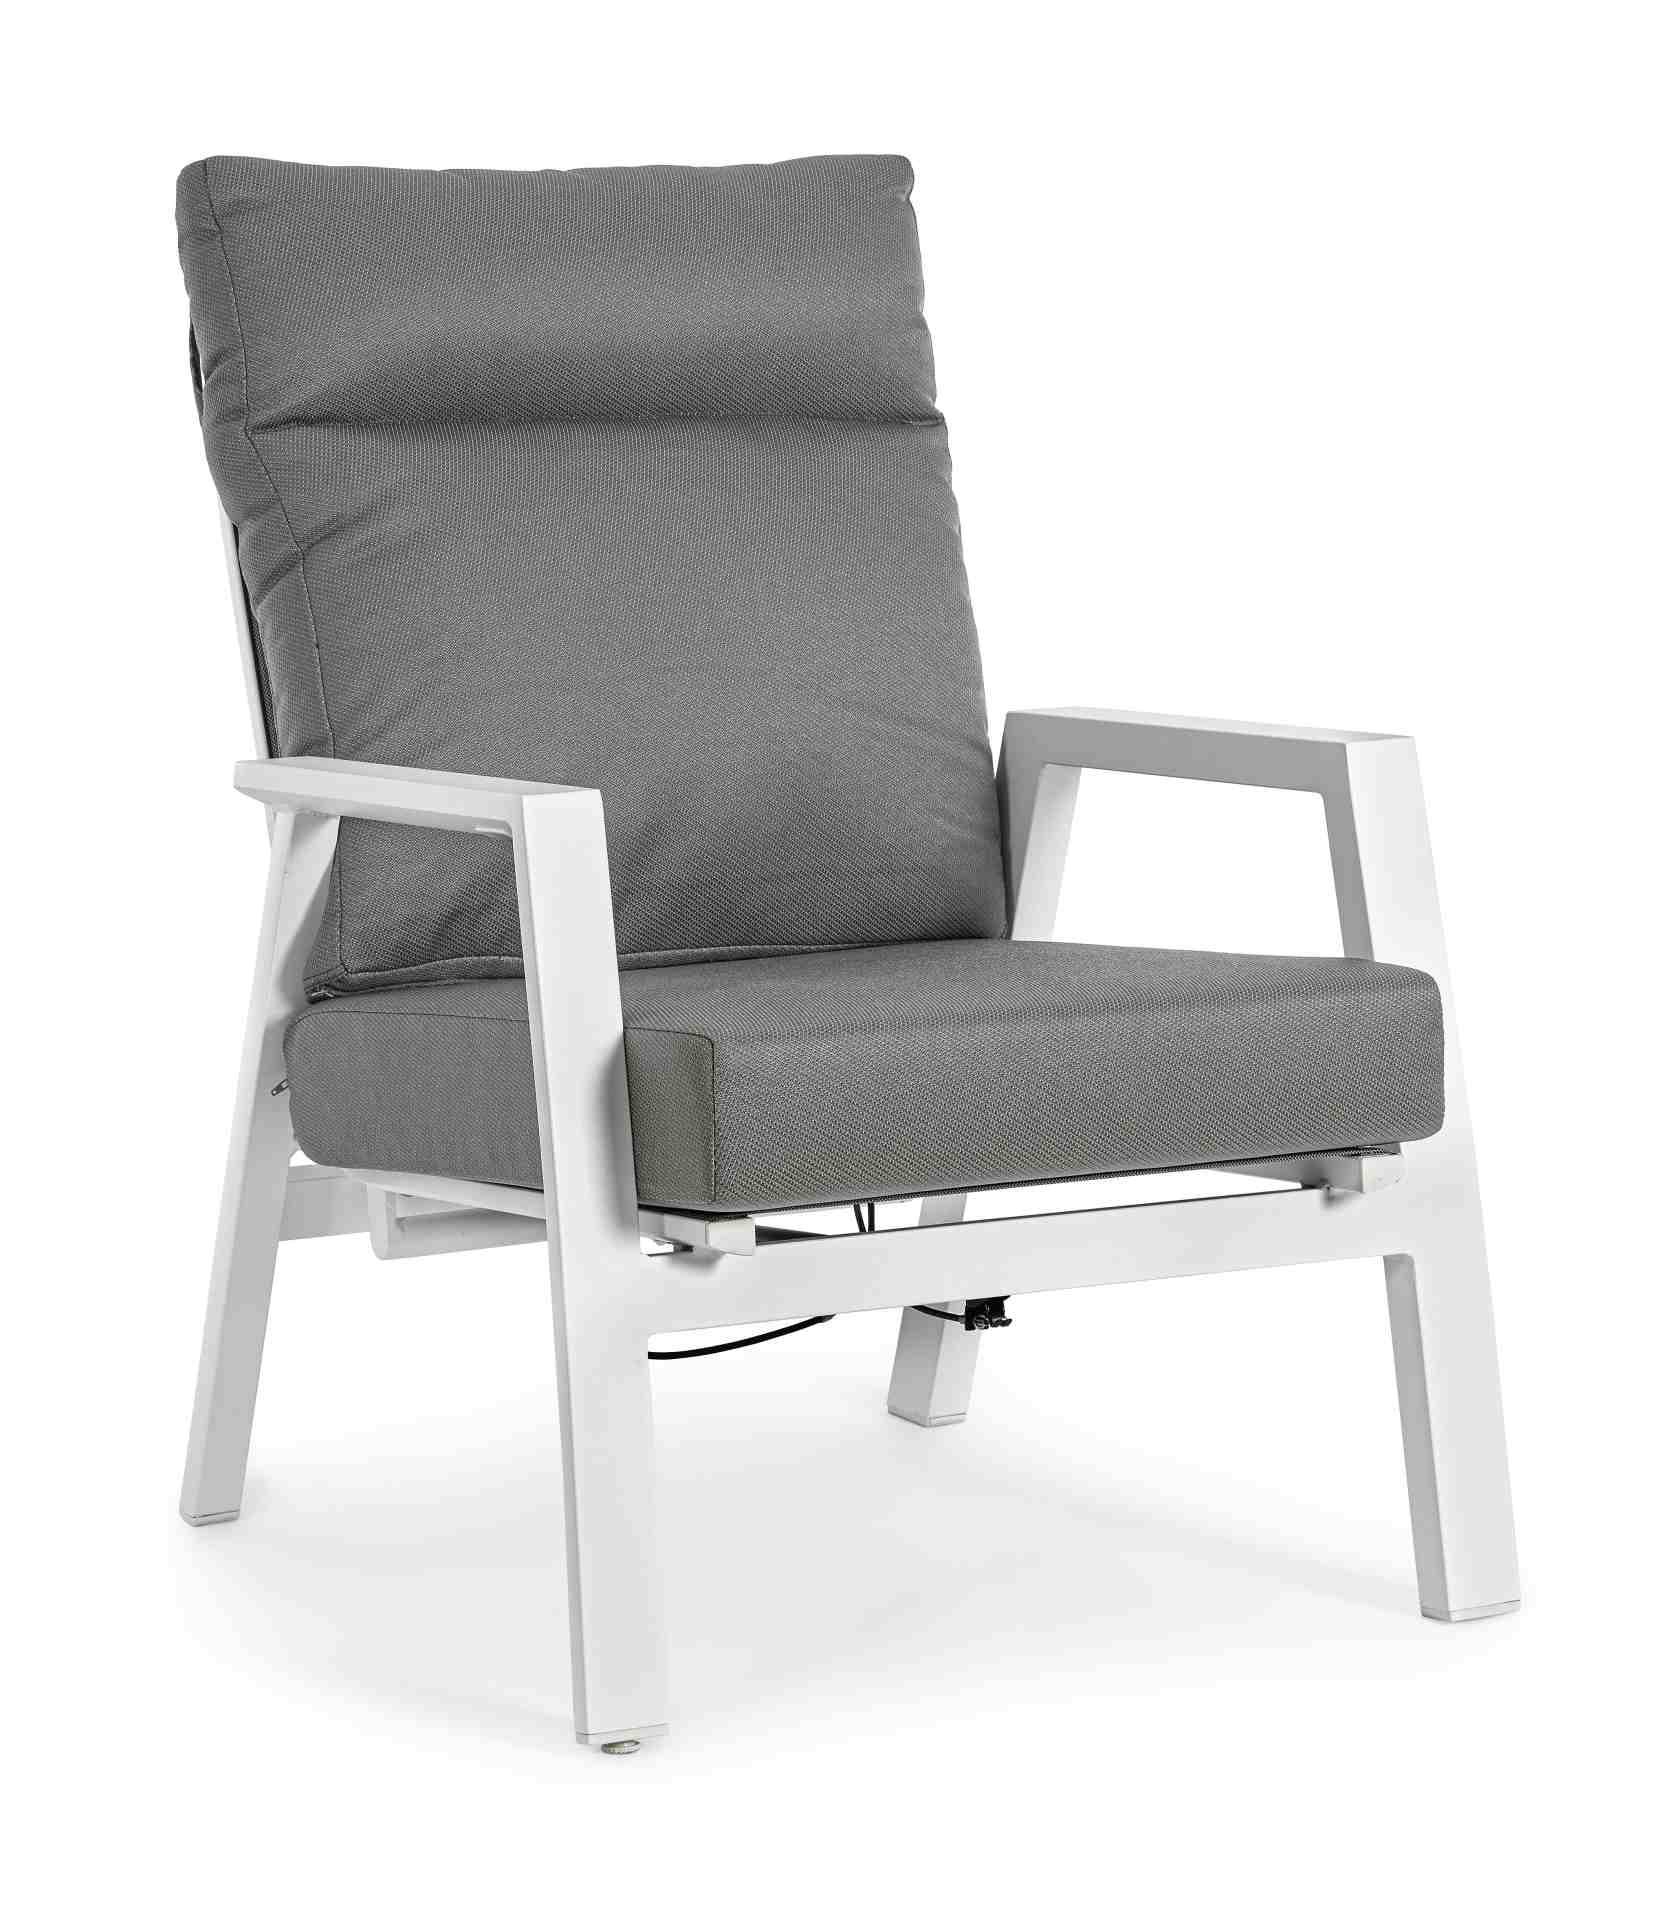 Der Gartensessel Kledi überzeugt mit seinem modernen Design. Gefertigt wurde es aus Olefin-Stoff, welcher einen Anthrazit Farbton besitzt. Das Gestell ist aus Aluminium und hat eine weiße Farbe. Der Sessel verfügt über eine Sitzhöhe von 46 cm und ist für 